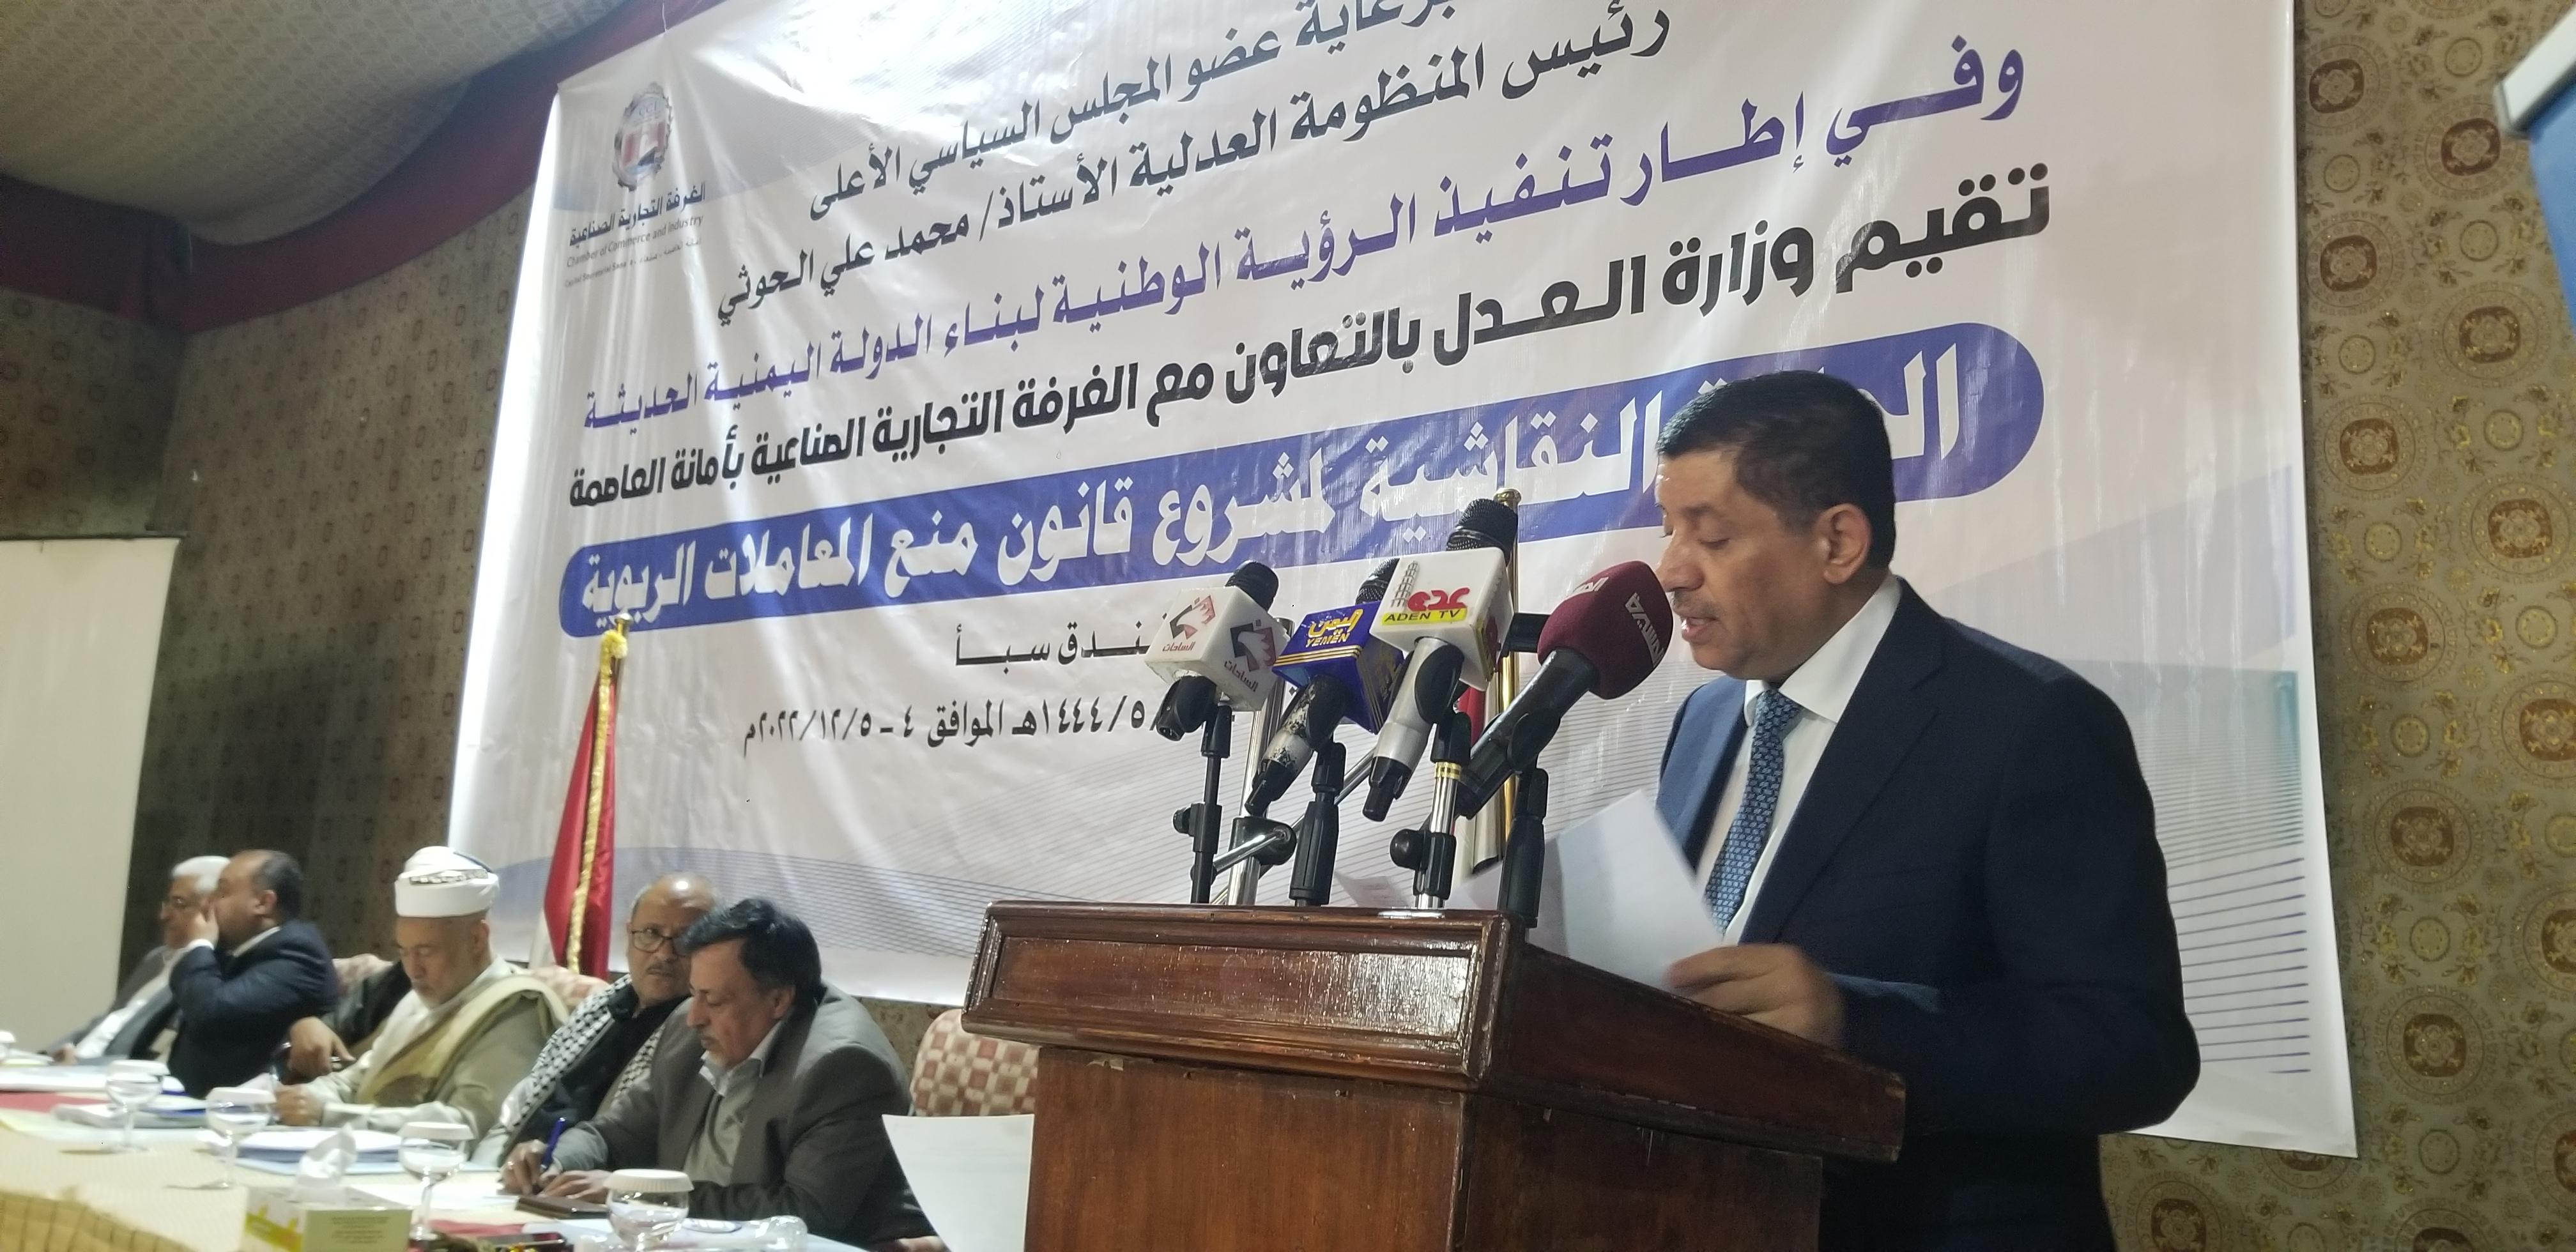 وزارة العدل والغرفة التجارية الصناعية بأمانة العاصمة صنعاء تنظمان حلقة نقاشية حول مشروع قانون منع المعاملات الربوية